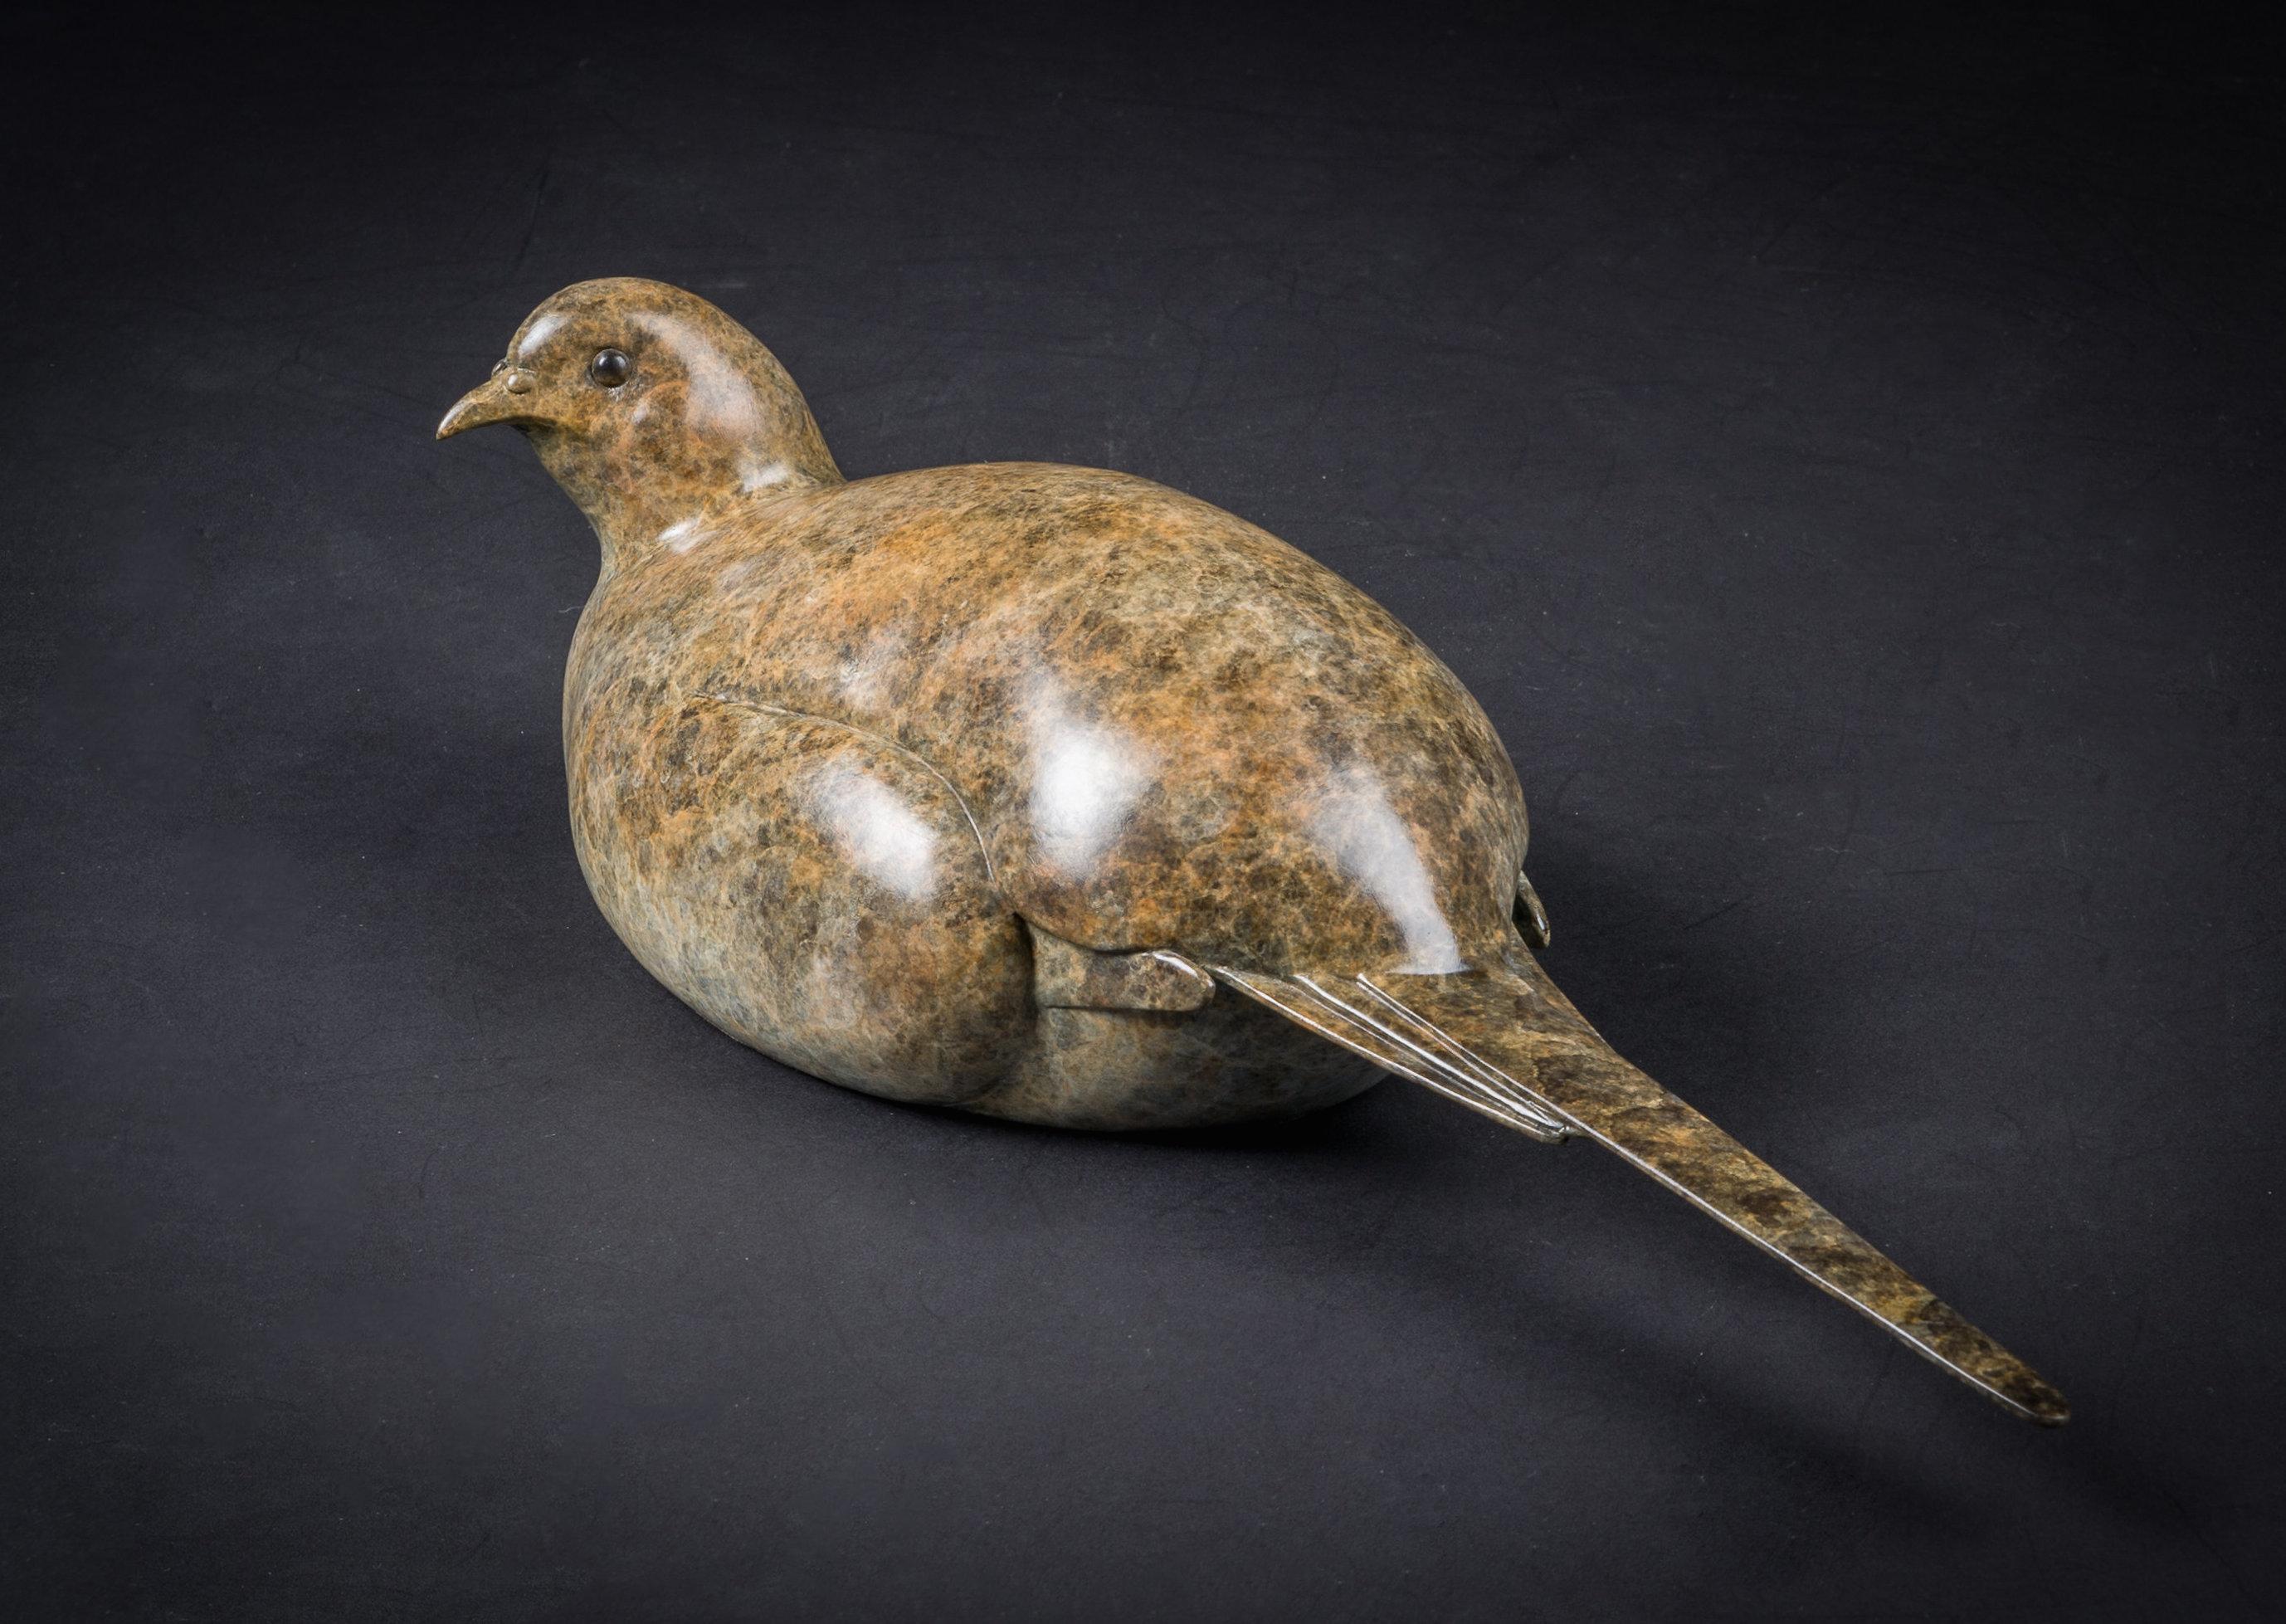 Figurative Sculpture Richard Smith b.1955 - Hen Pheasant de Richard Smith. Sculpture en bronze contemporaine britannique sur la faune et la flore 